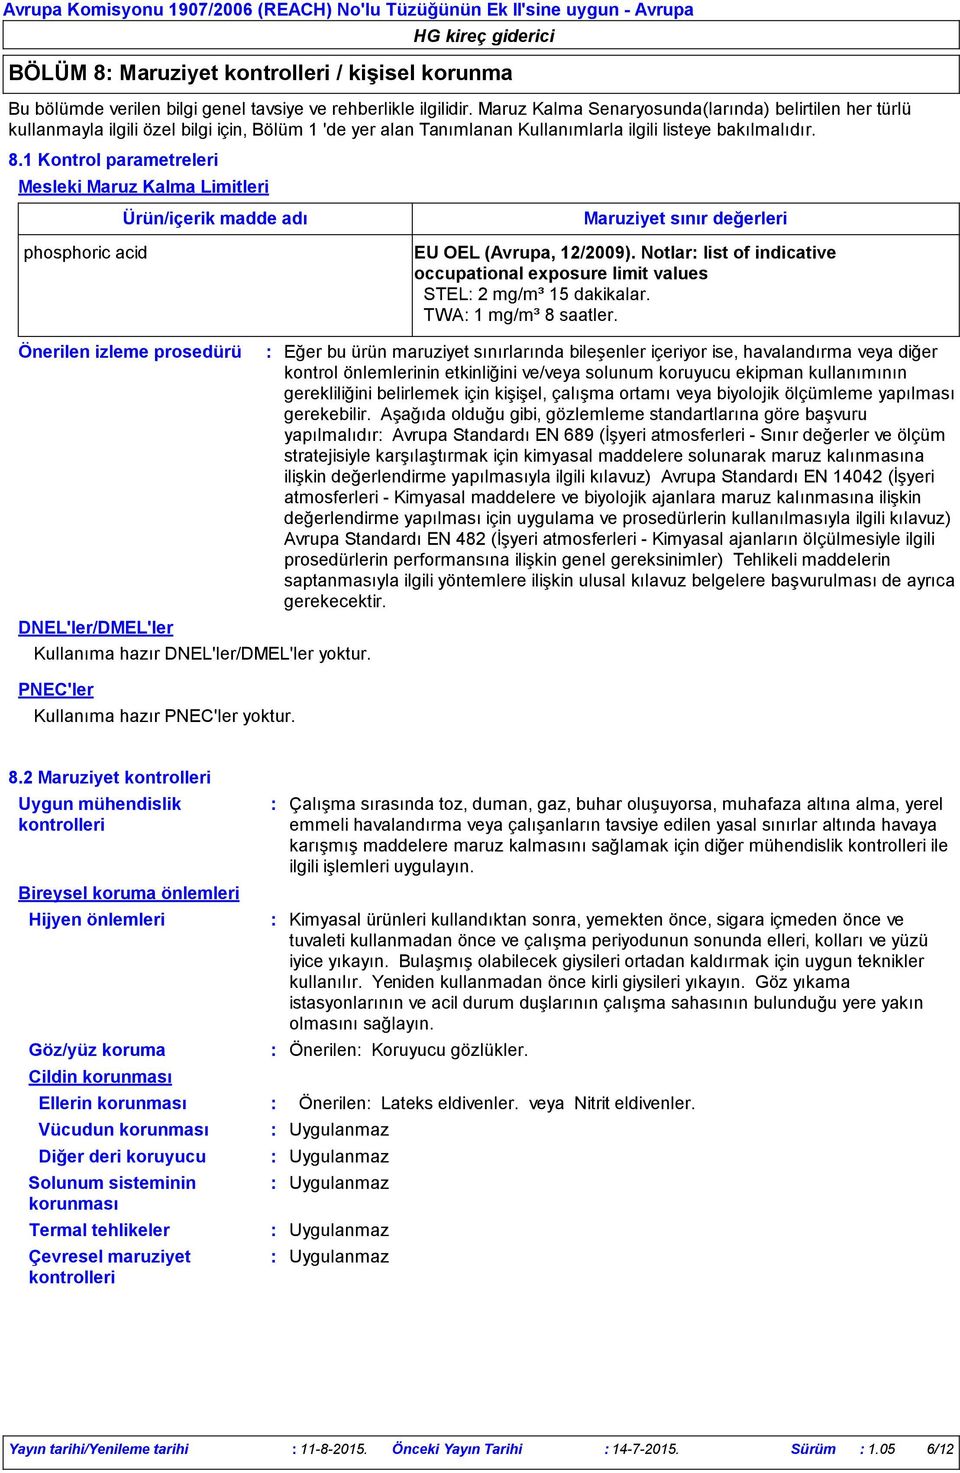 1 Kontrol parametreleri Mesleki Maruz Kalma Limitleri phosphoric acid Ürün/içerik madde adı Maruziyet sınır değerleri EU OEL (Avrupa, 12/2009).